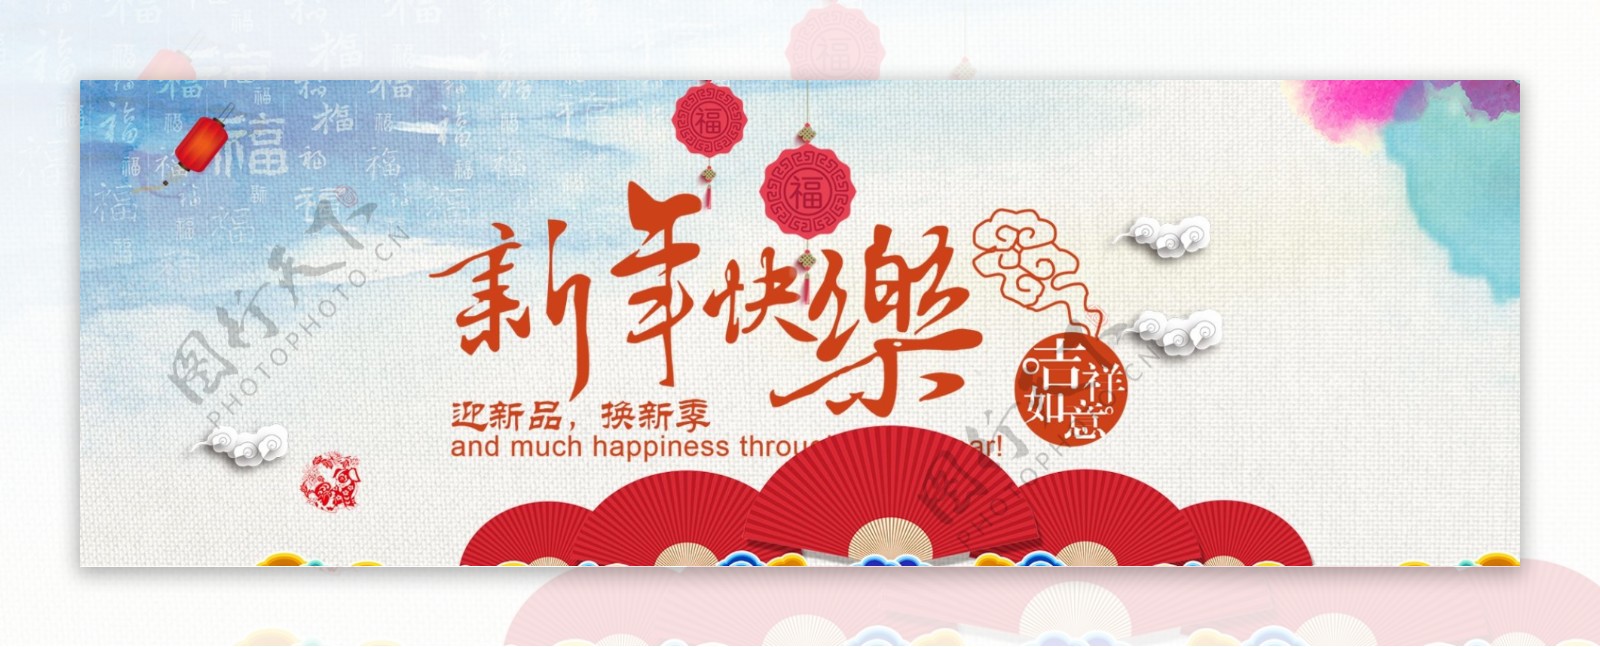 新春快乐红色促销喜庆电商淘宝海报模板